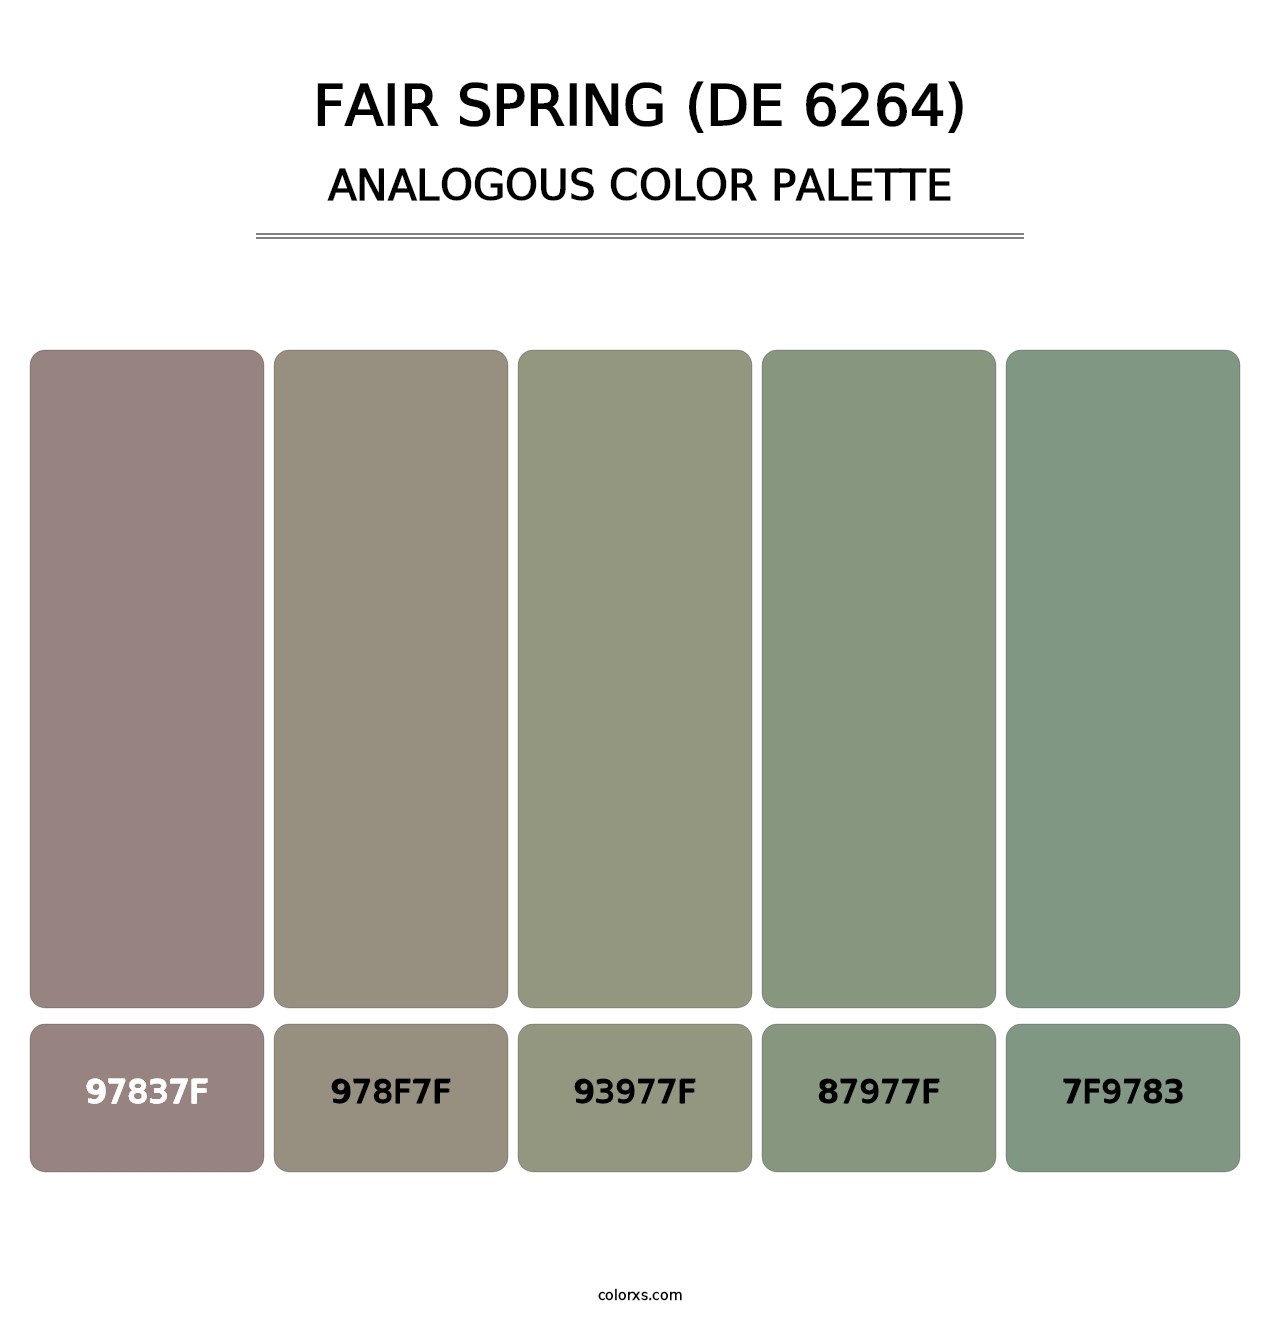 Fair Spring (DE 6264) - Analogous Color Palette